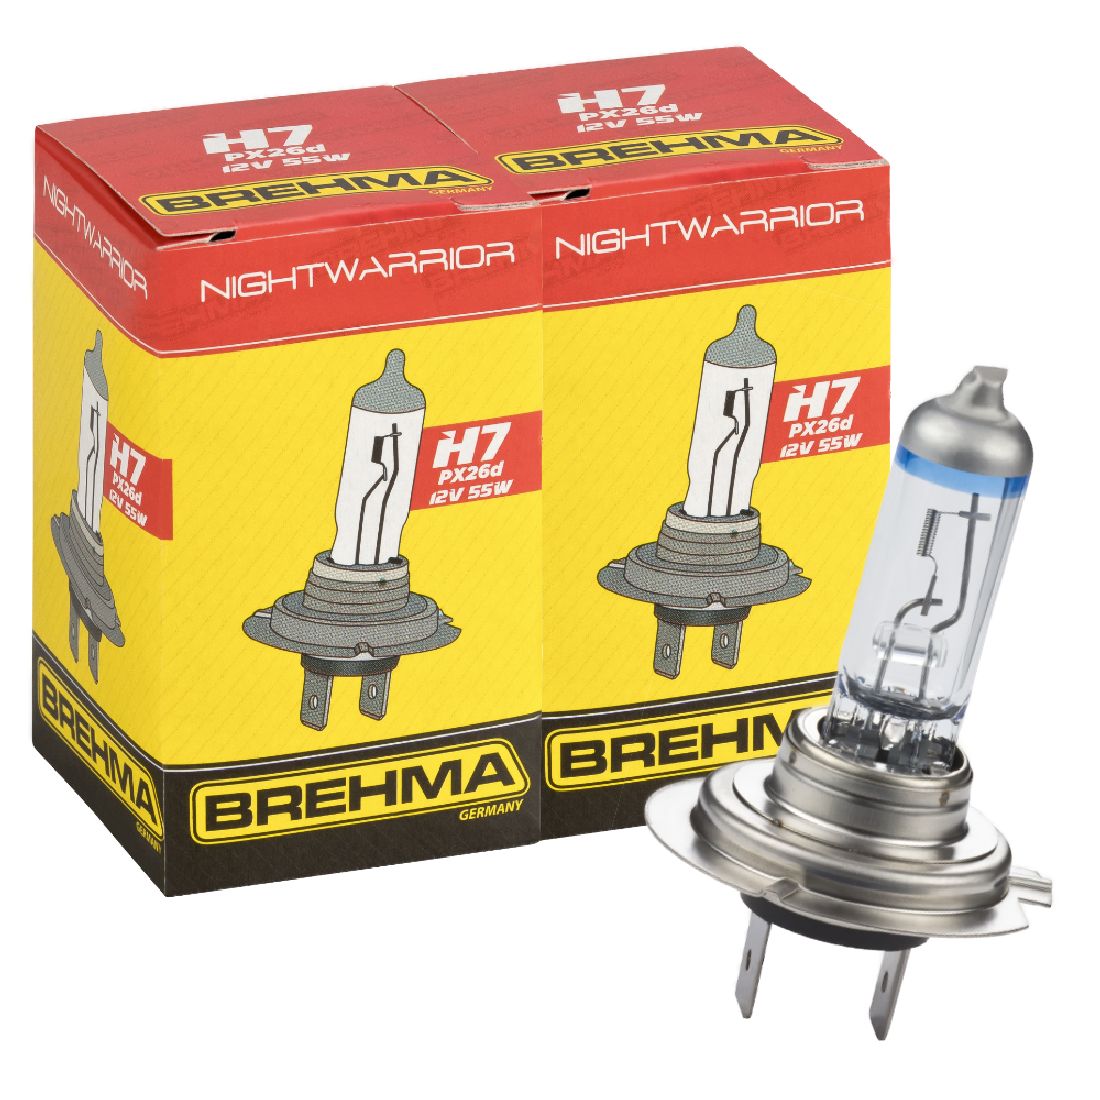 Auto-Lampen-Discount - H7 Lampen und mehr günstig kaufen - Duo Set BREHMA H7  12V 55W NightWarrior Lampe +120% mehr Licht